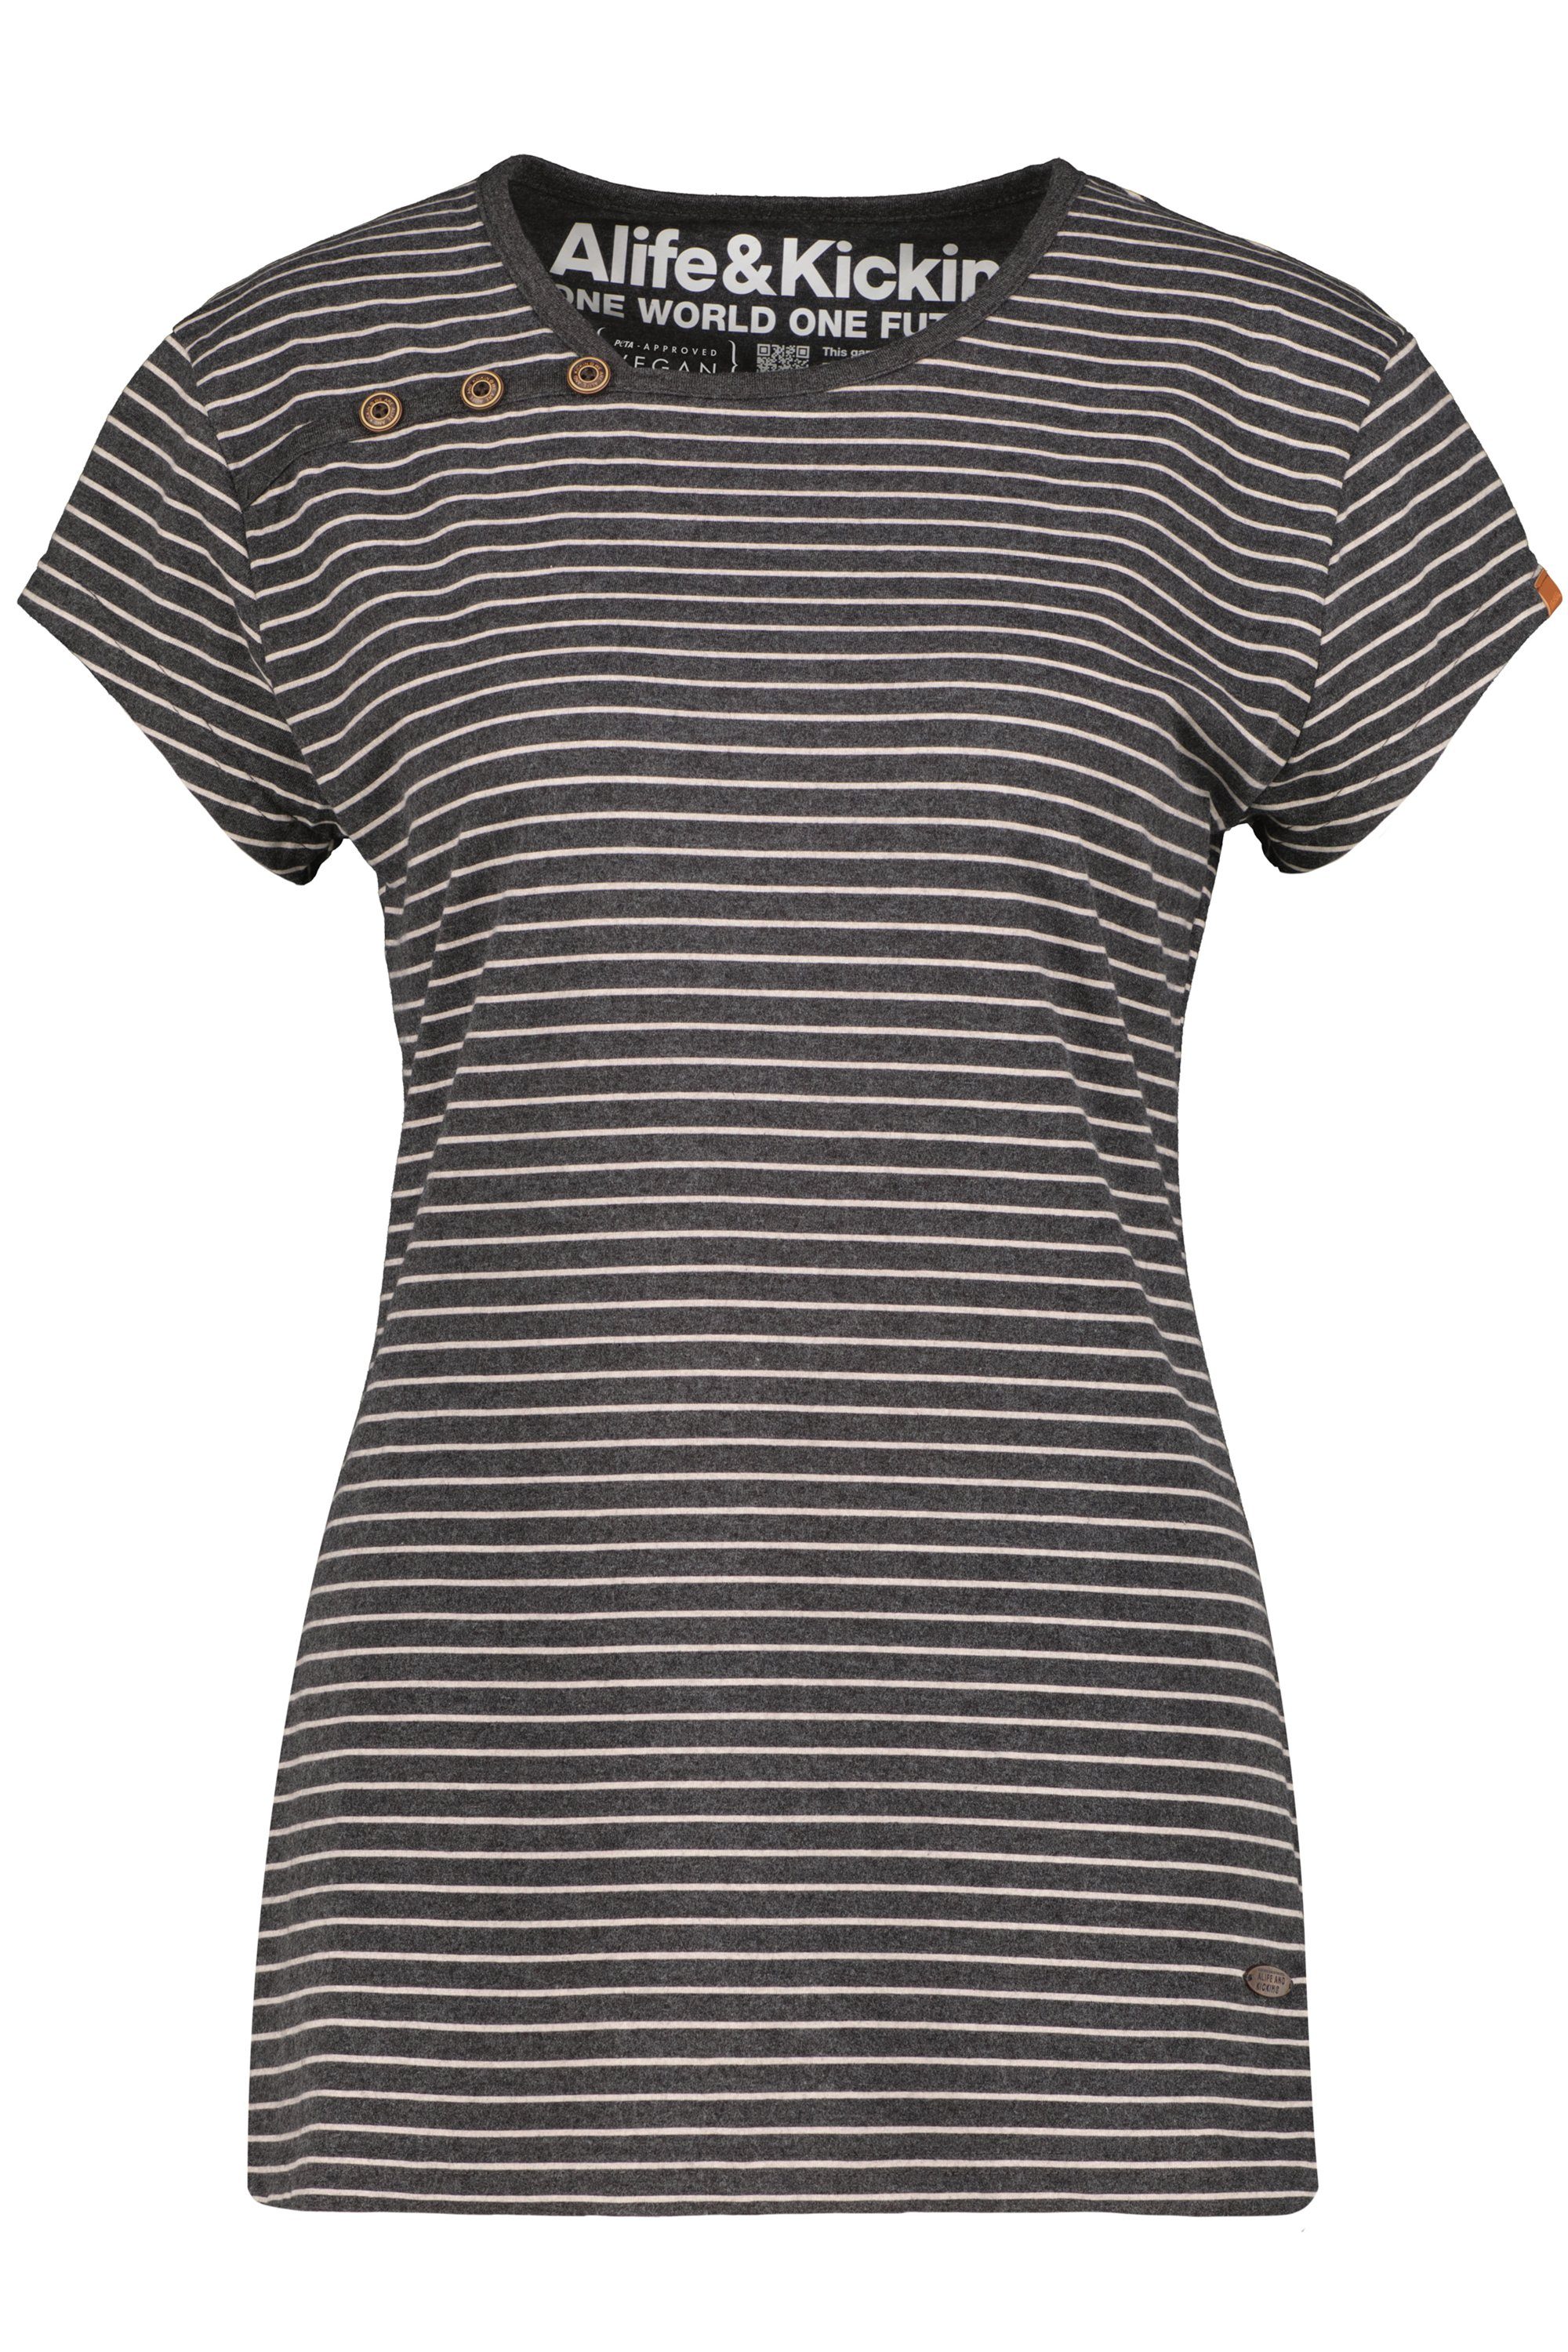 Alife & Damen T-Shirt melange JuliaAK Kickin Shirt moonless T-Shirt Z